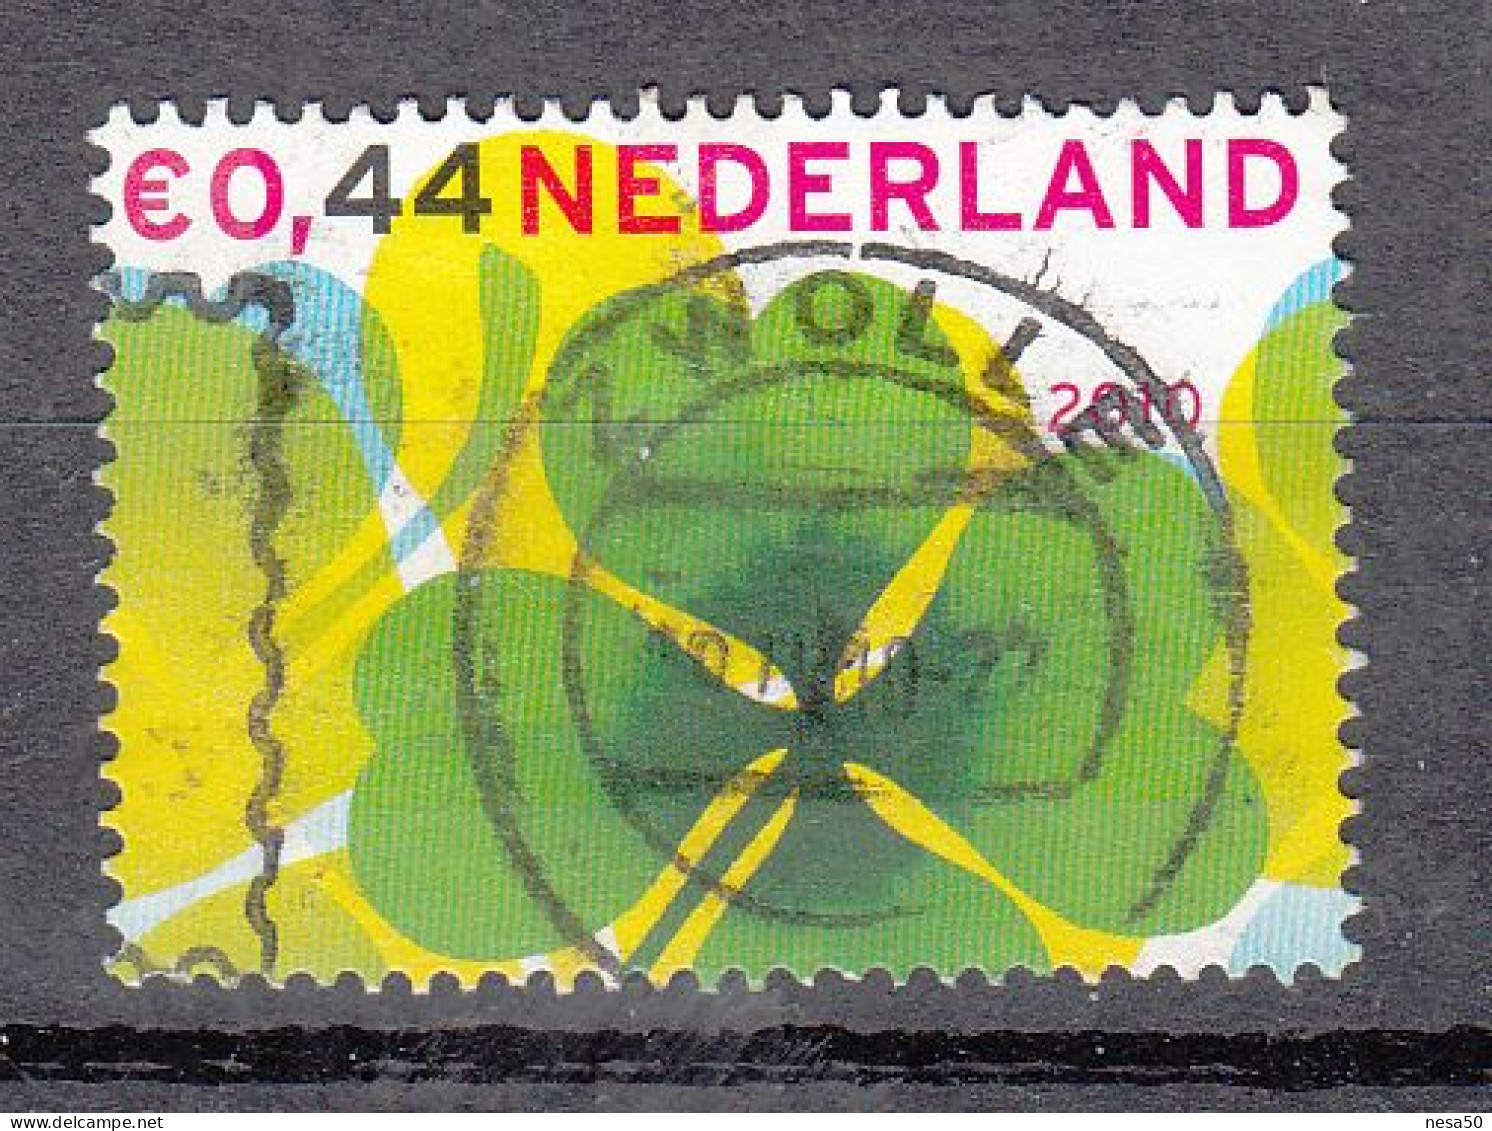 Nederland 2010 Nvph Nr 2713 A, Mi Nr 2742, Weken Van De Kaart - Oblitérés